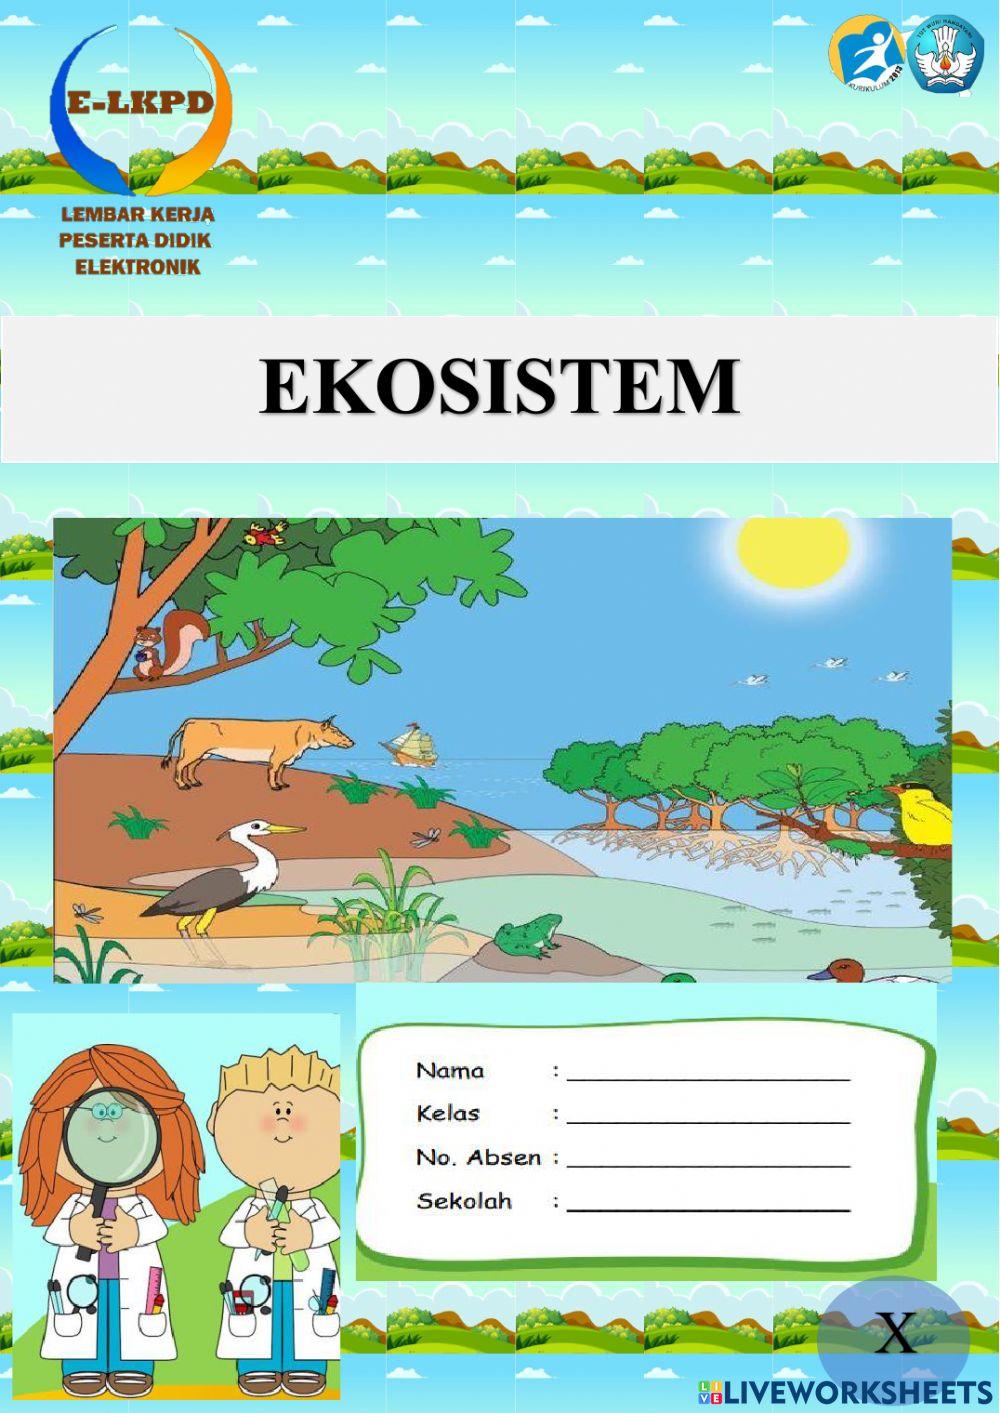 E-LKPD Ekosistem